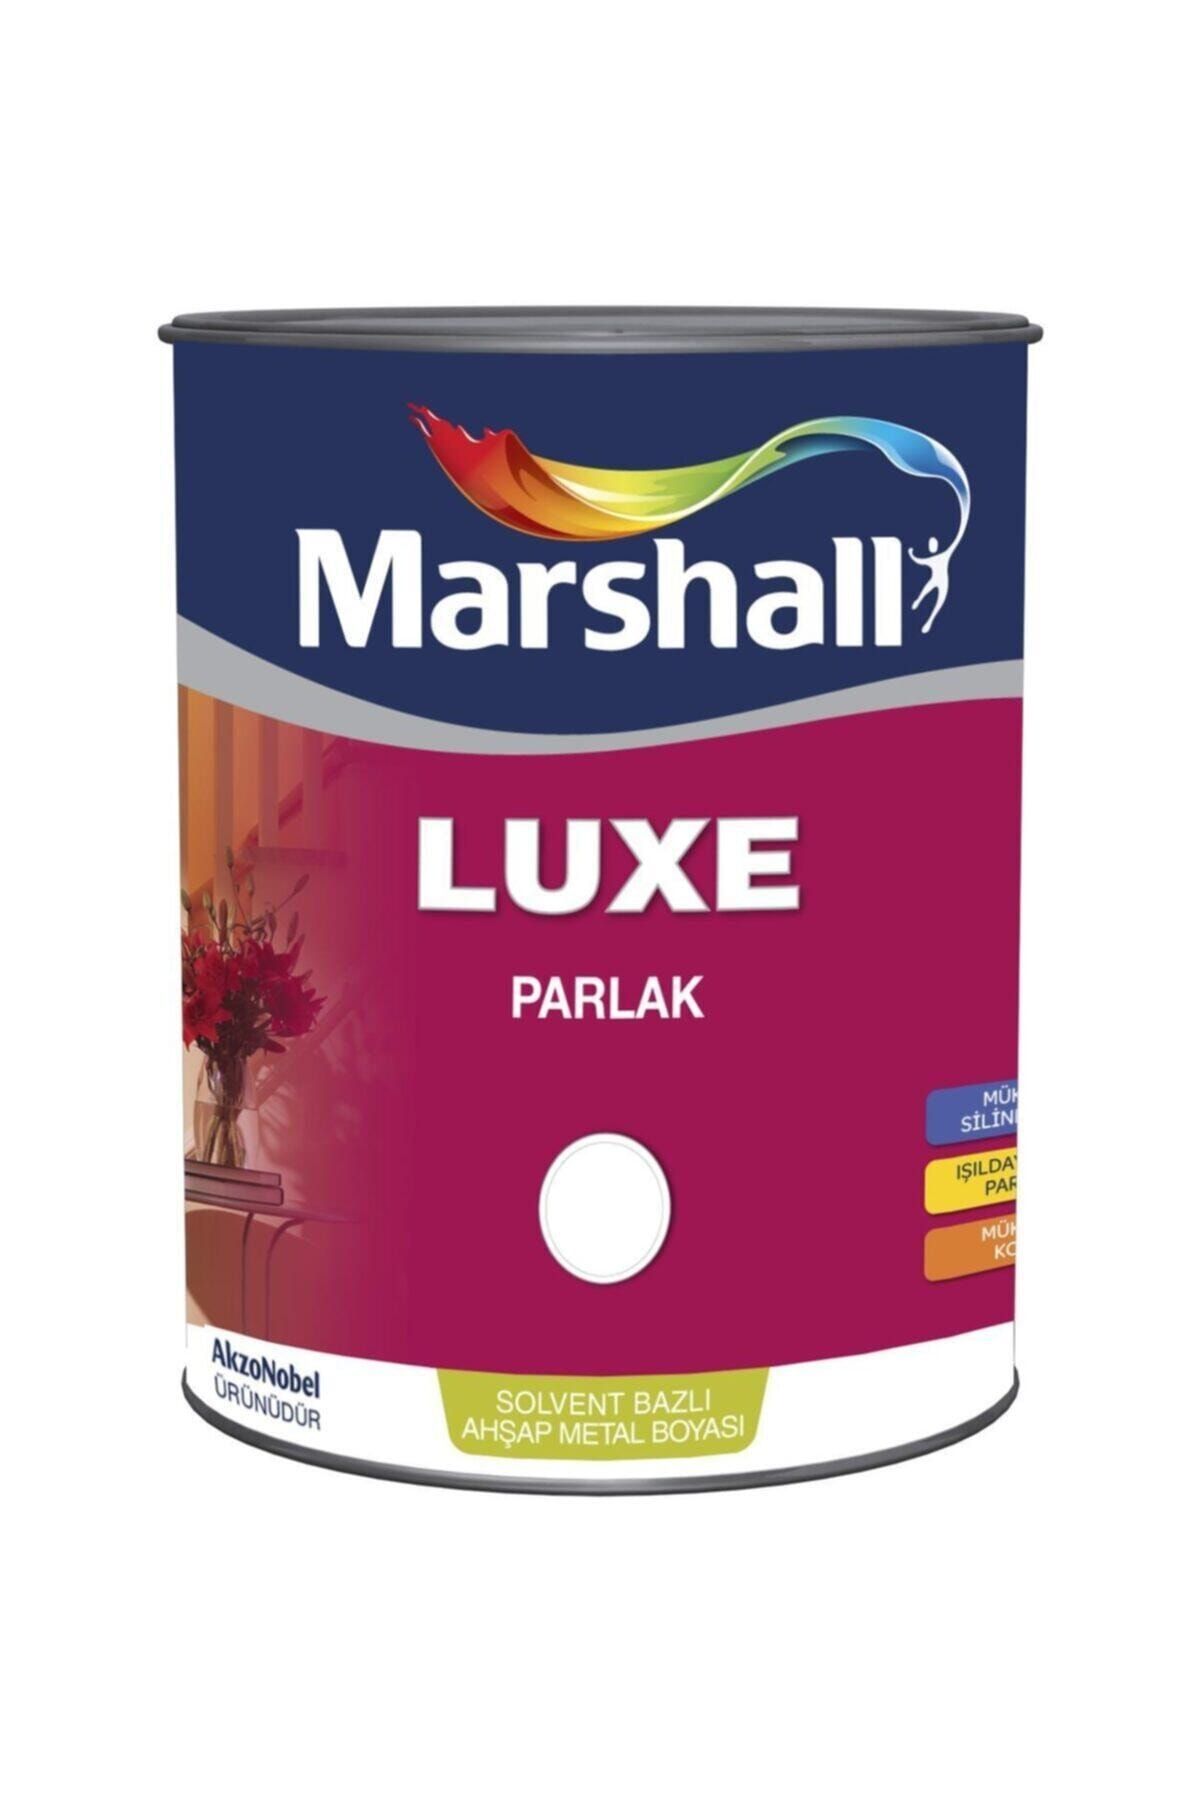 Marshall Luxe Çiğ Damlası Parlak Solvent Bazlı Yağlı Boya 1 lt.